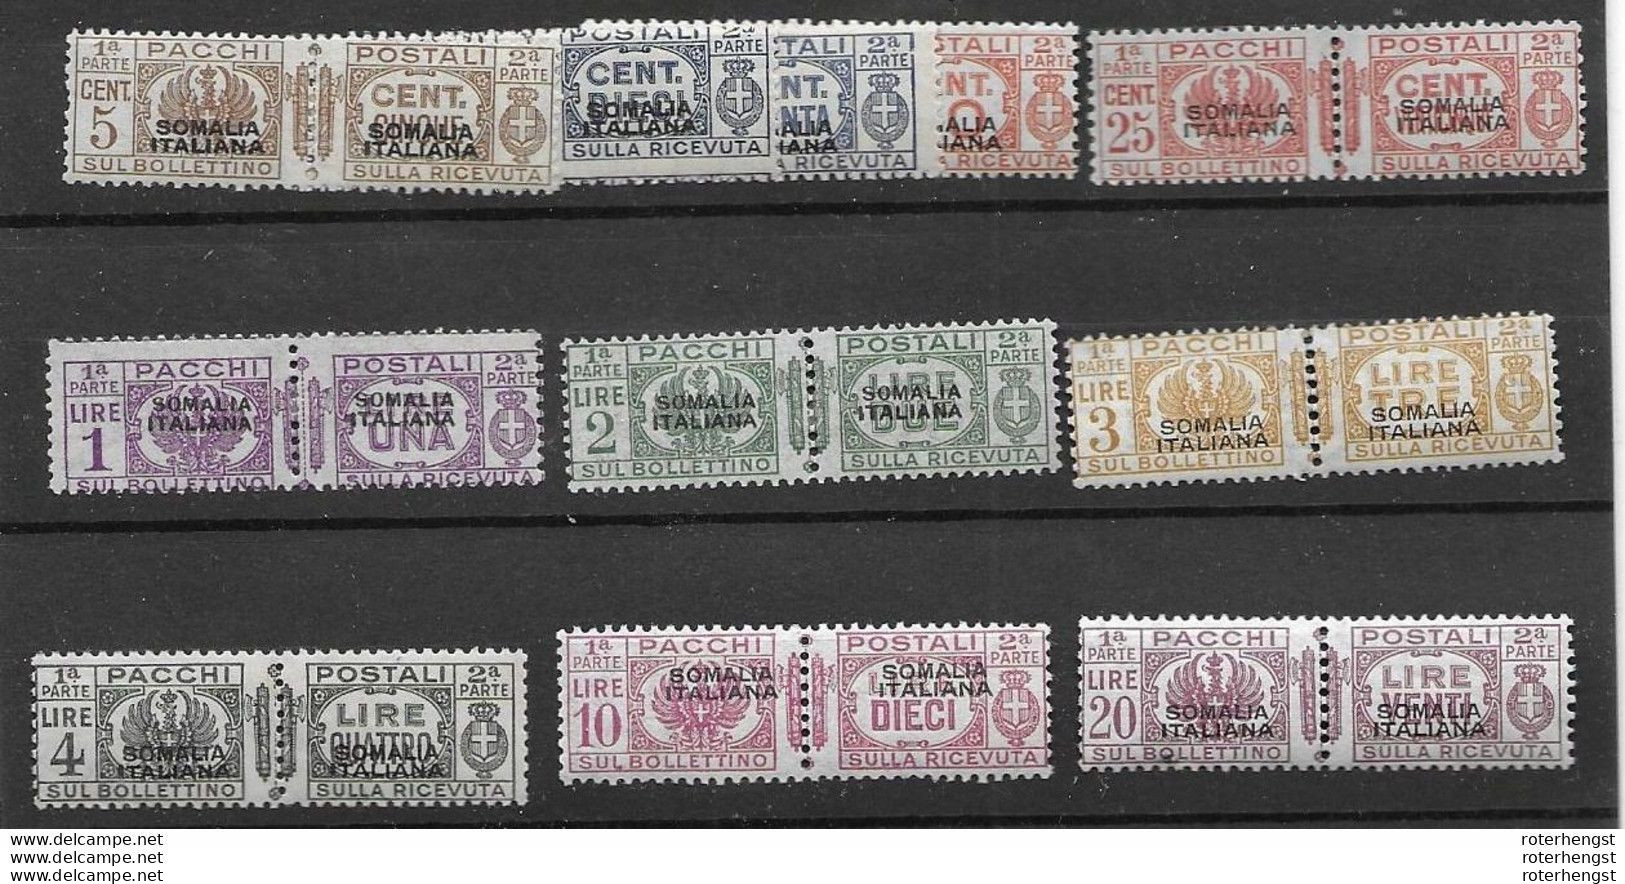 RR Somalia Italiana Mnh** 2090 + Euros 1928 (11 Pairs) - Somalia